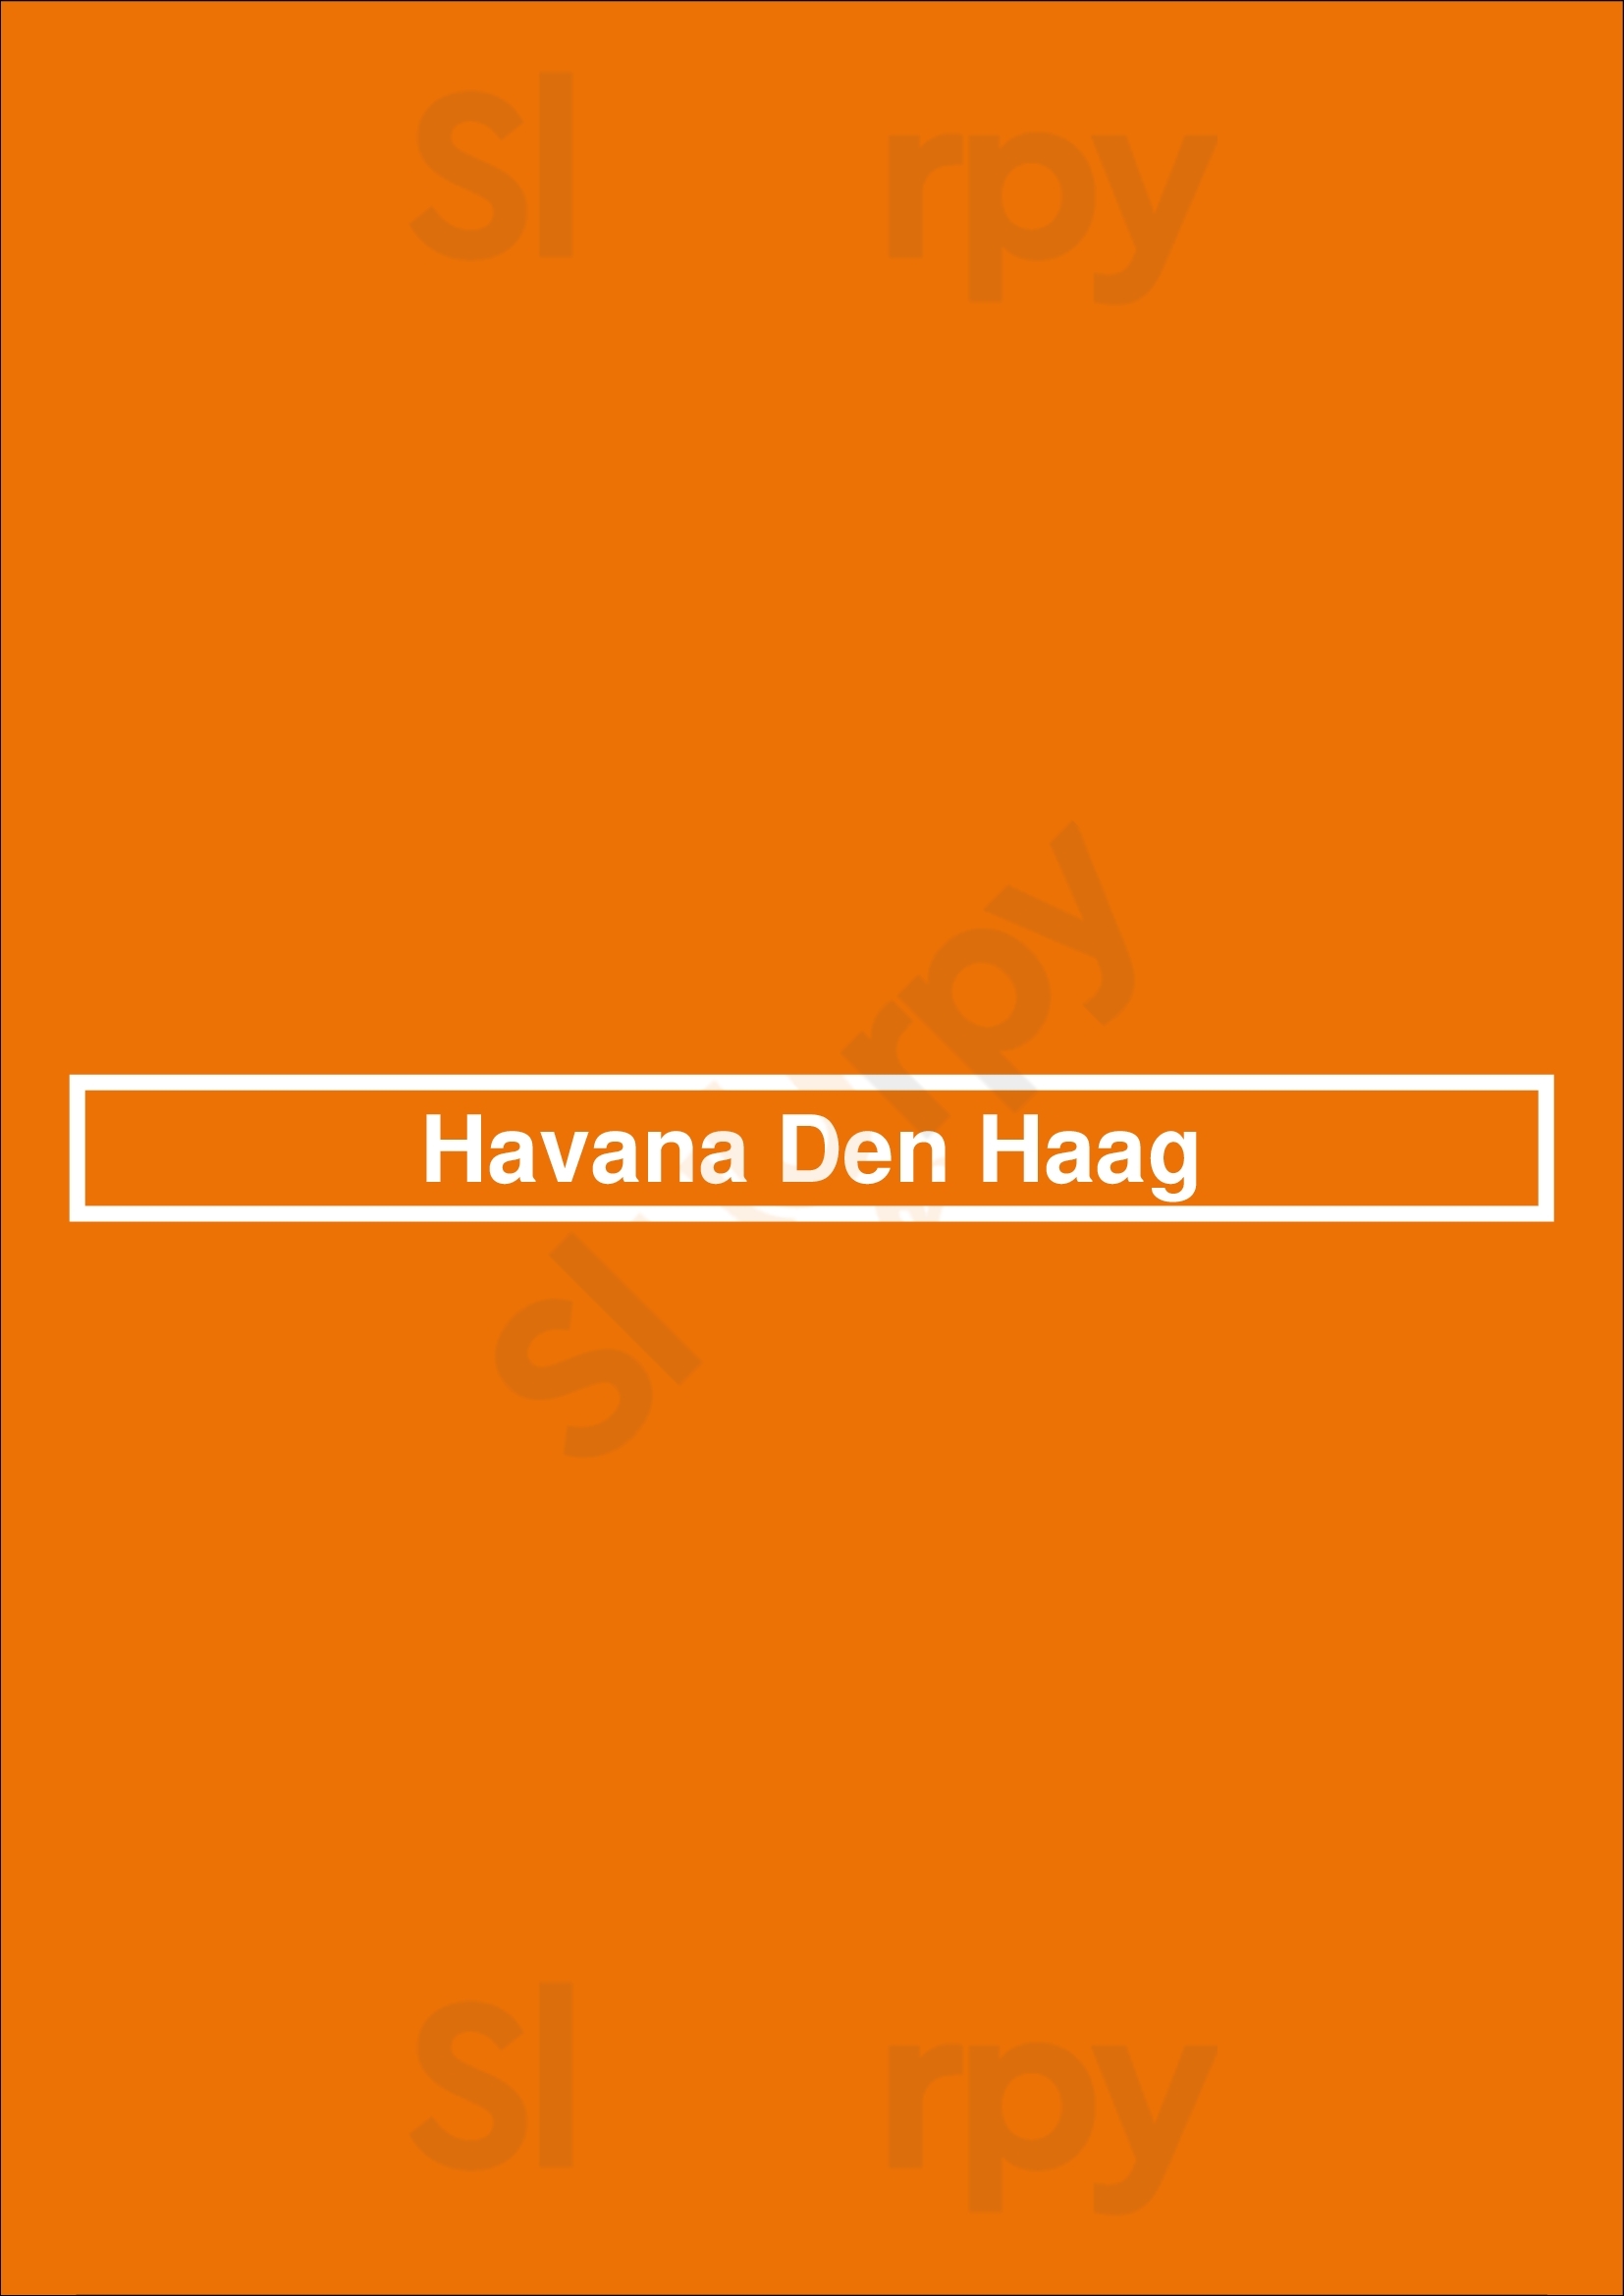 Havana Den Haag Den Haag Menu - 1